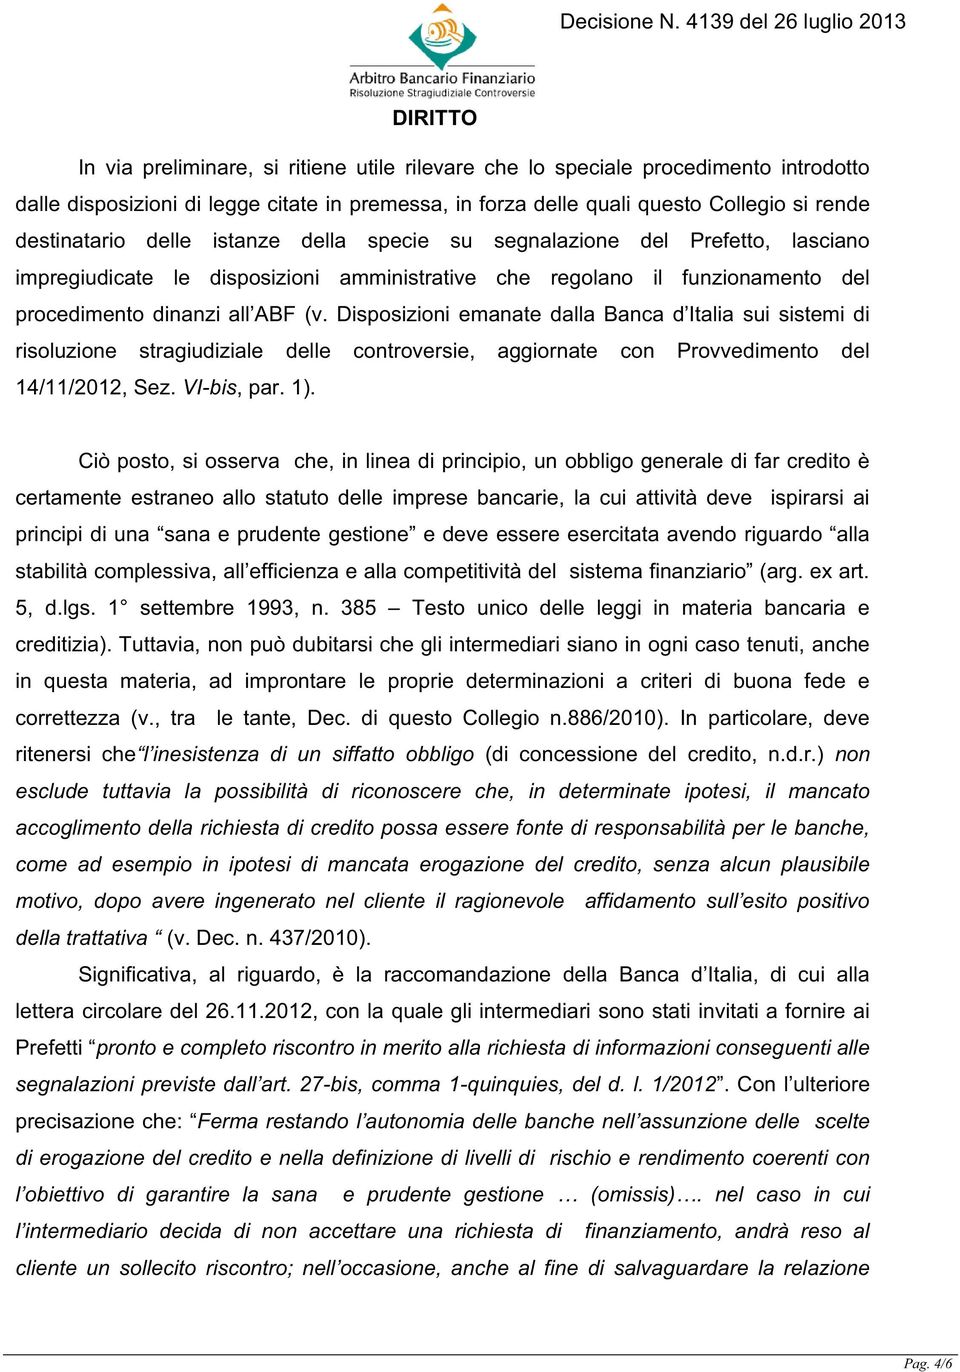 Disposizioni emanate dalla Banca d Italia sui sistemi di risoluzione stragiudiziale delle controversie, aggiornate con Provvedimento del 14/11/2012, Sez. VI-bis, par. 1).